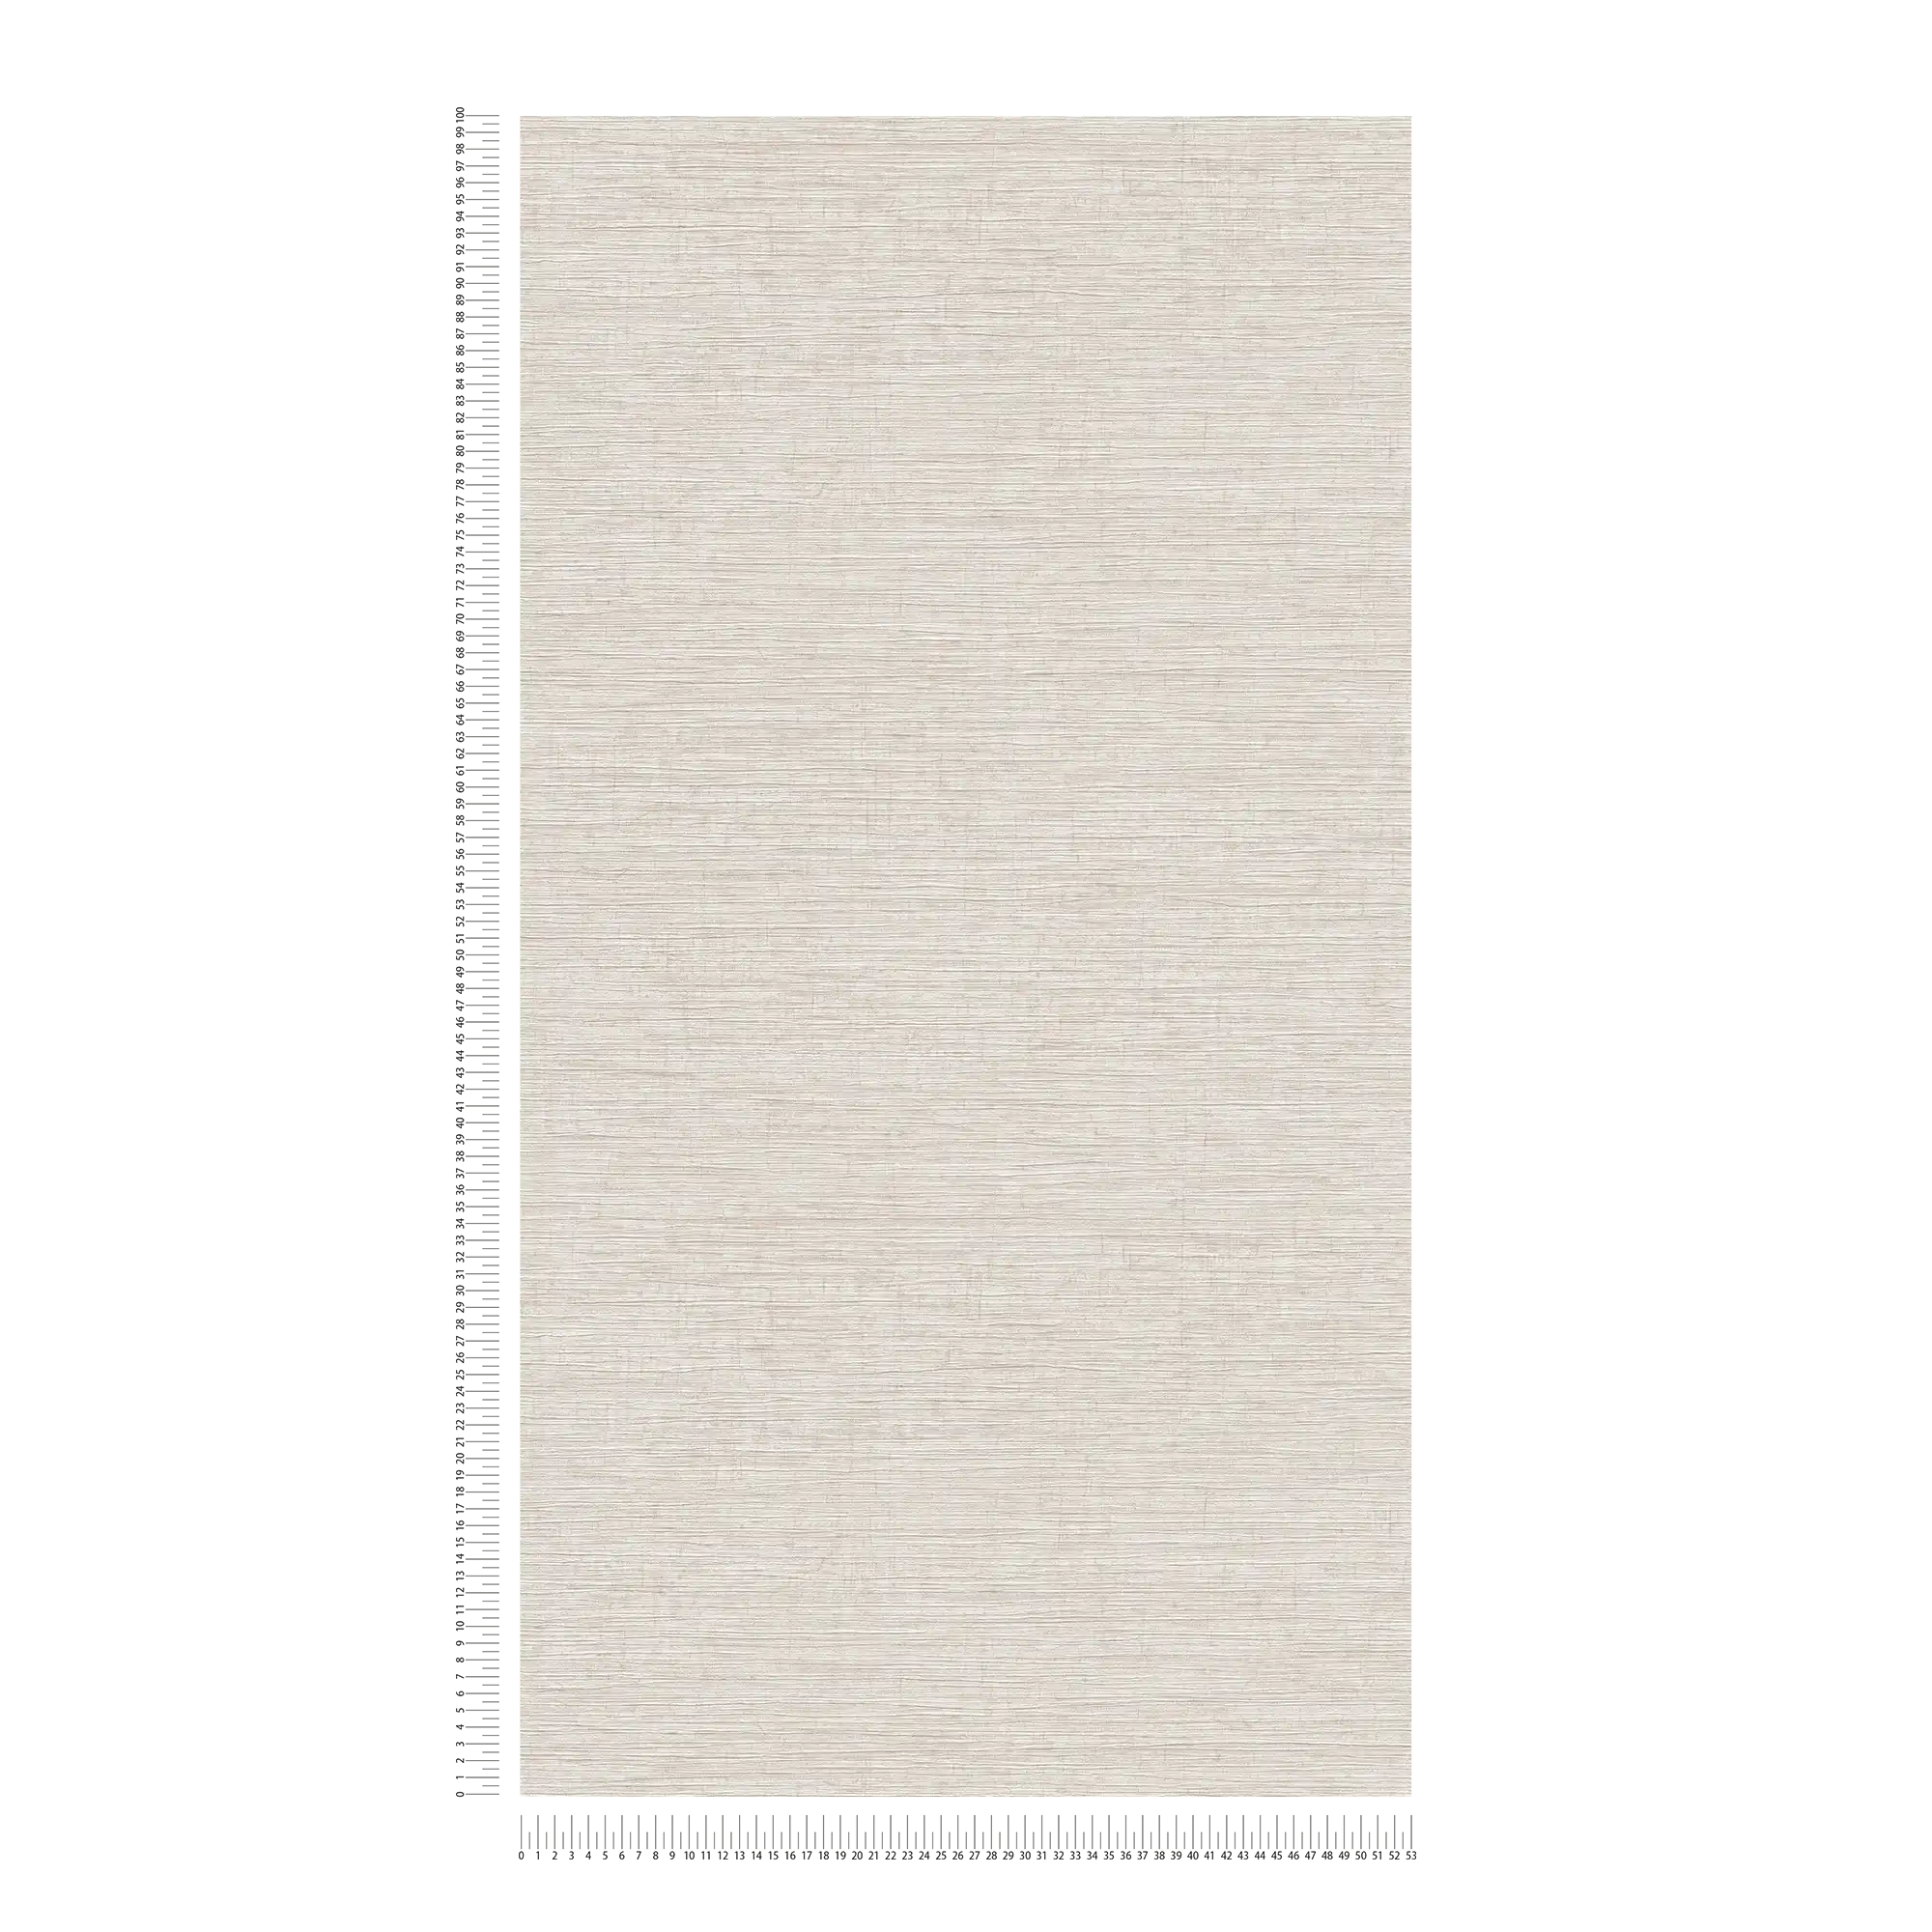             Papier peint intissé chiné avec motif textile gaufré - beige, marron, gris
        